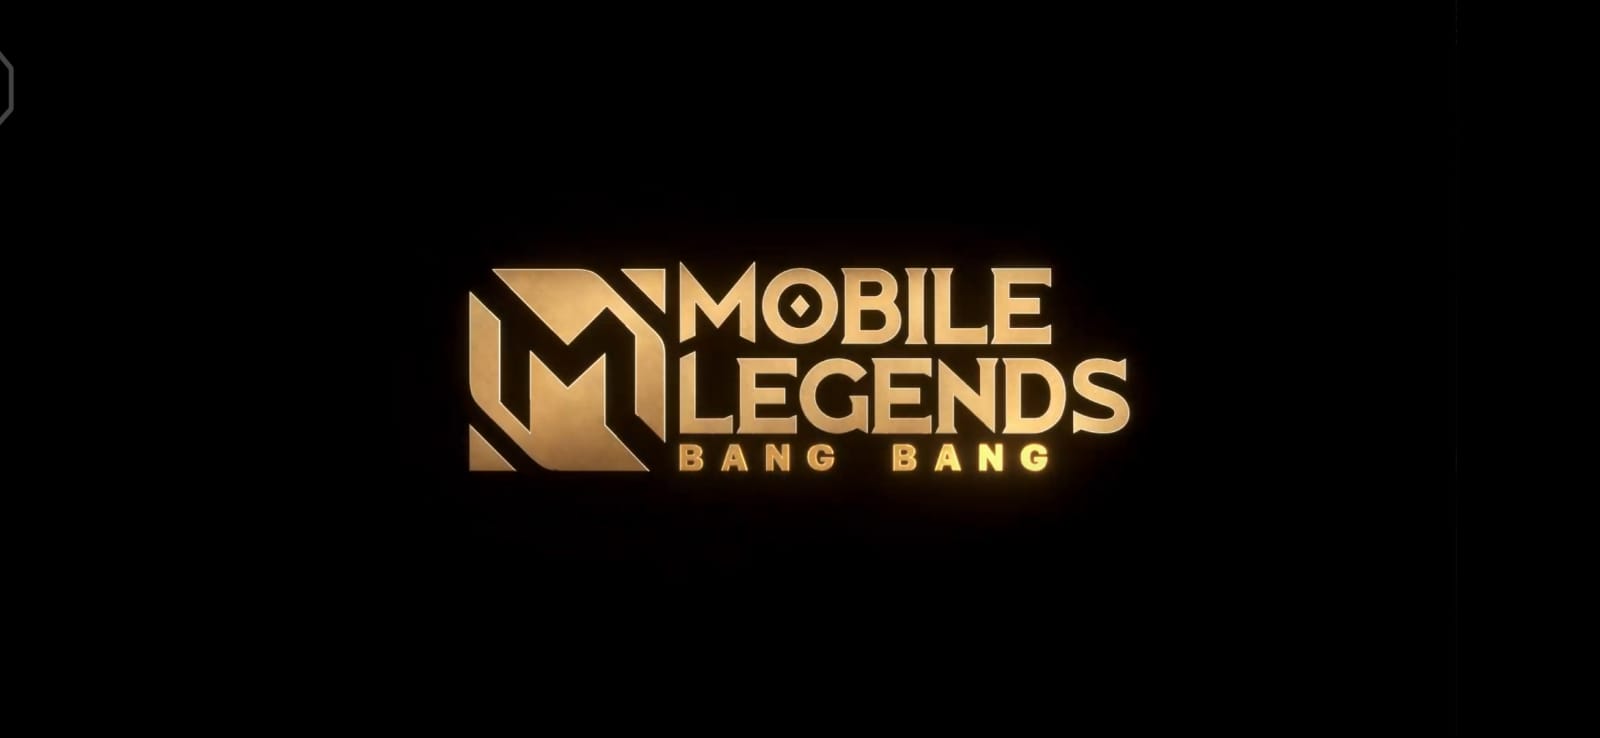 META Mobile Legends Bang Bang yang Pernah Booming pada Masanya